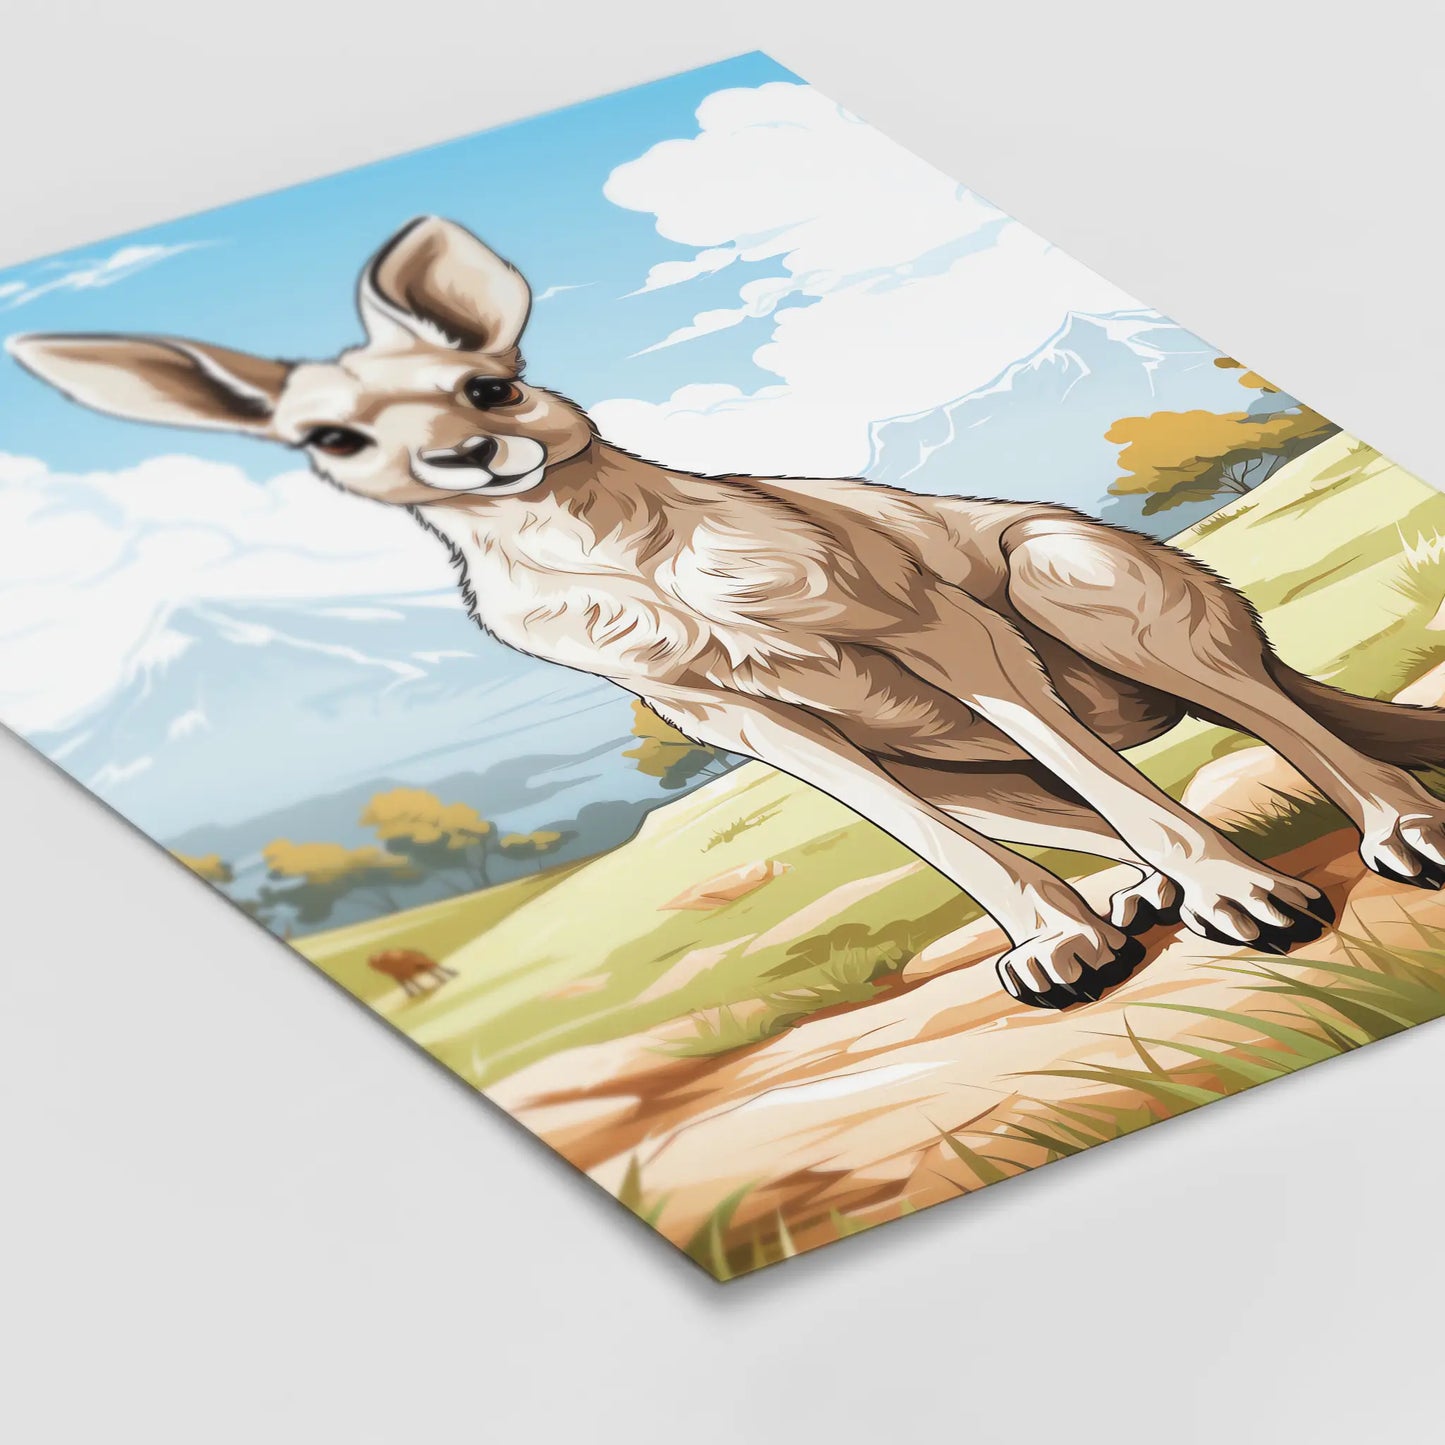 Kangaroo No 2 - Comic Style - Poster